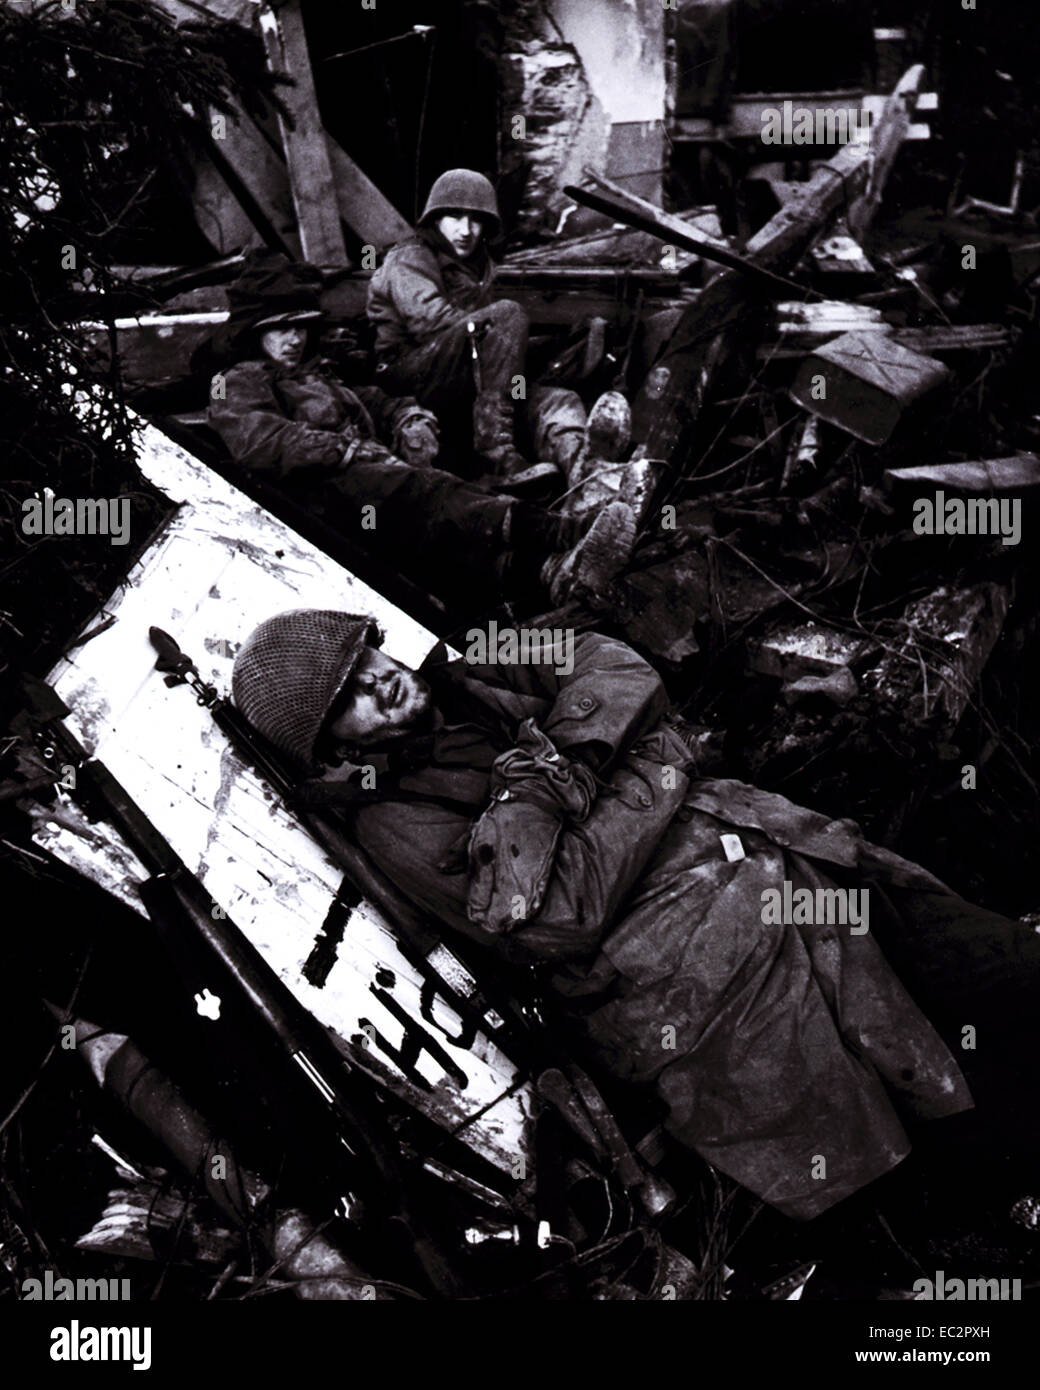 Des soldats américains se reposant au milieu des ruines de l'édifice, avec soldat couché sur plank en premier plan, sur la ligne Siegfried, vallée du Rhône, front allemand. février 1945. Banque D'Images